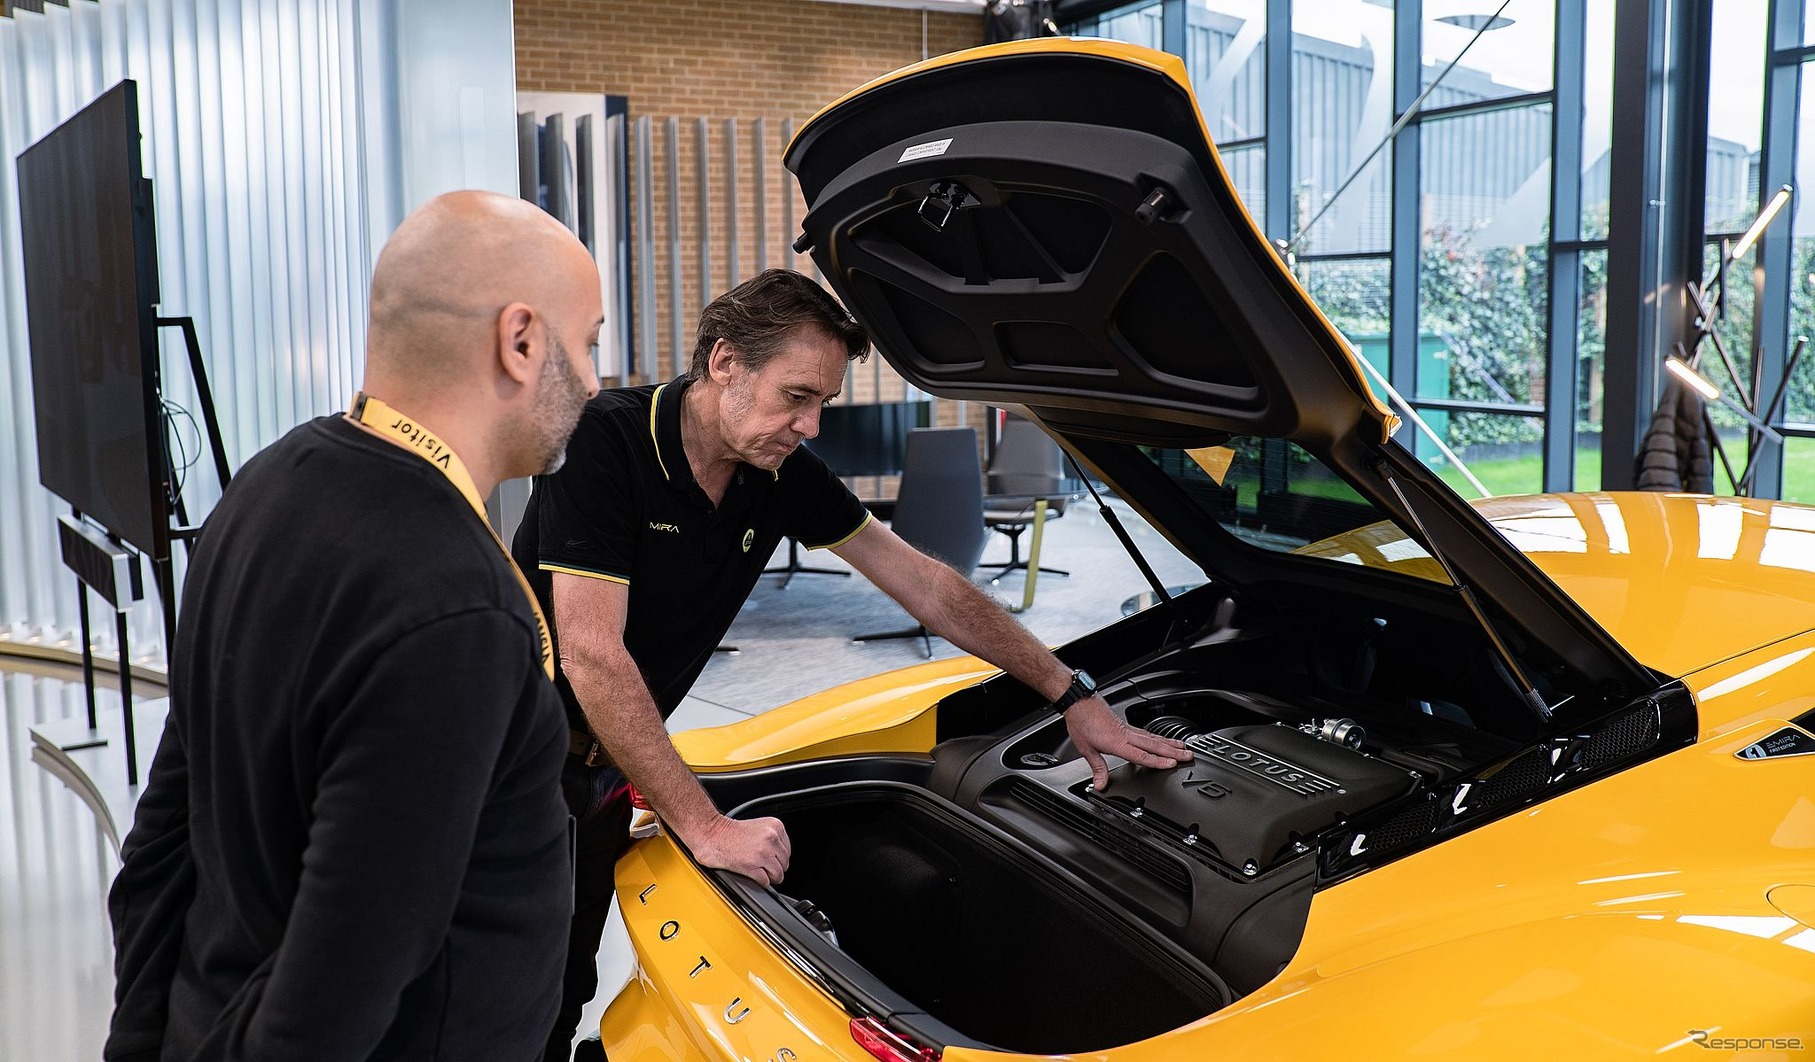 ロータスカーズが英国本社で新車を直接納車する新プログラム「ファクトリー・コレクション」を開始し最初の1台としてエミーラの発売記念モデル「V6ファーストエディション」を顧客に引き渡し